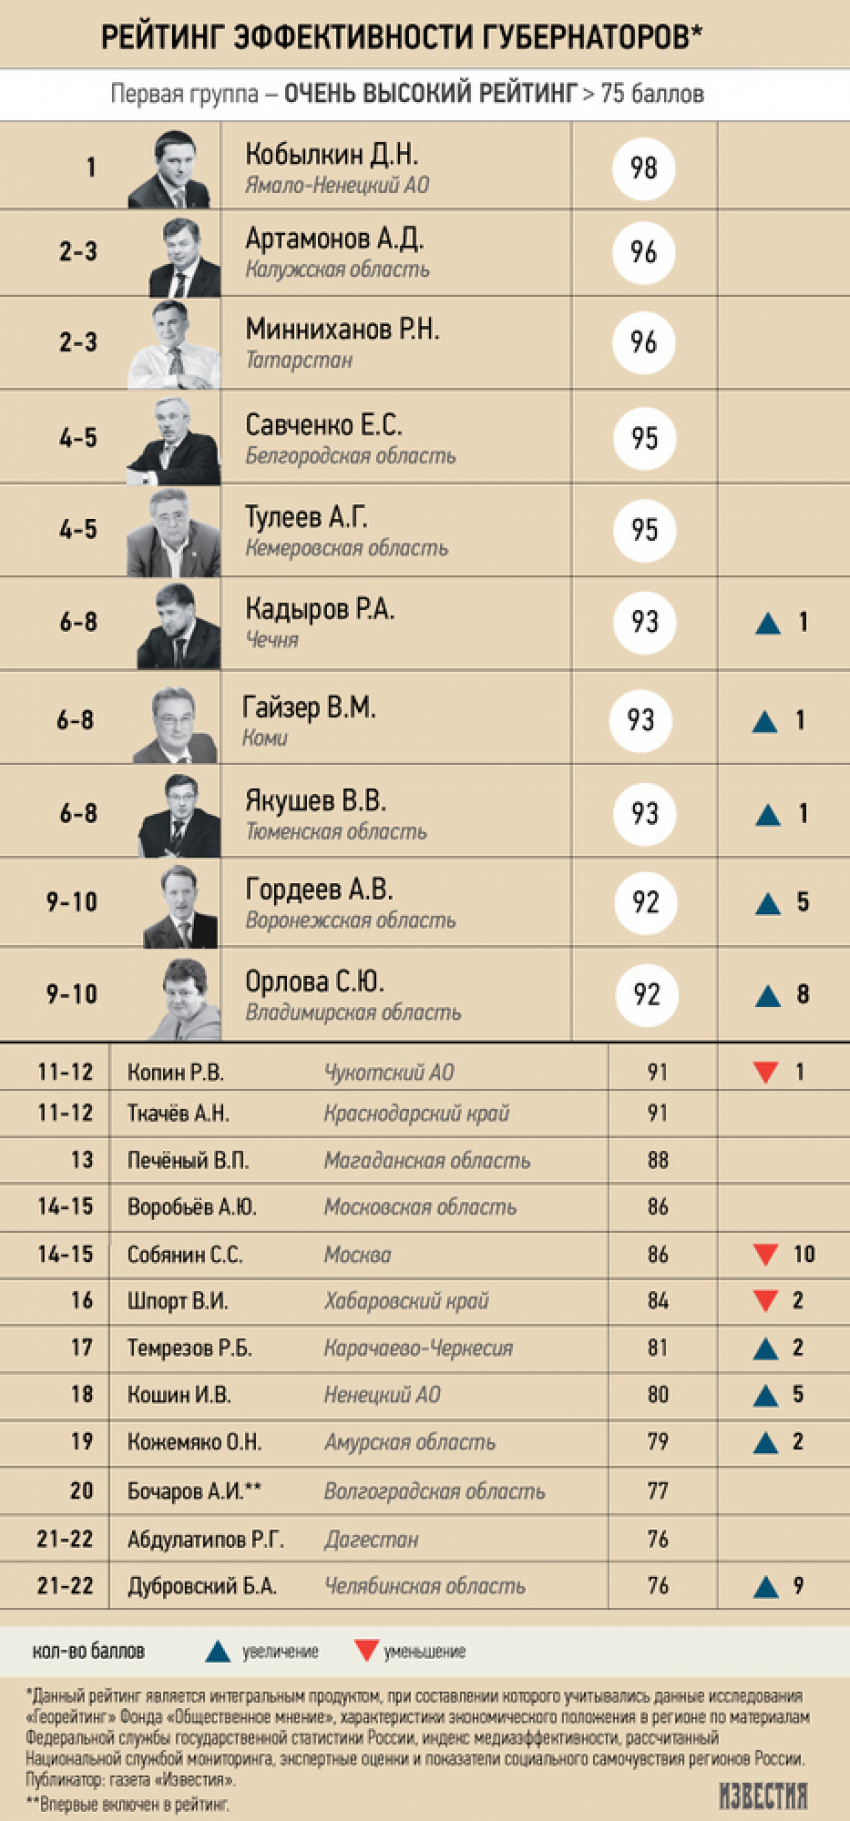 Алексей Гордеев вошел в десятку самых эффективных губернаторов России